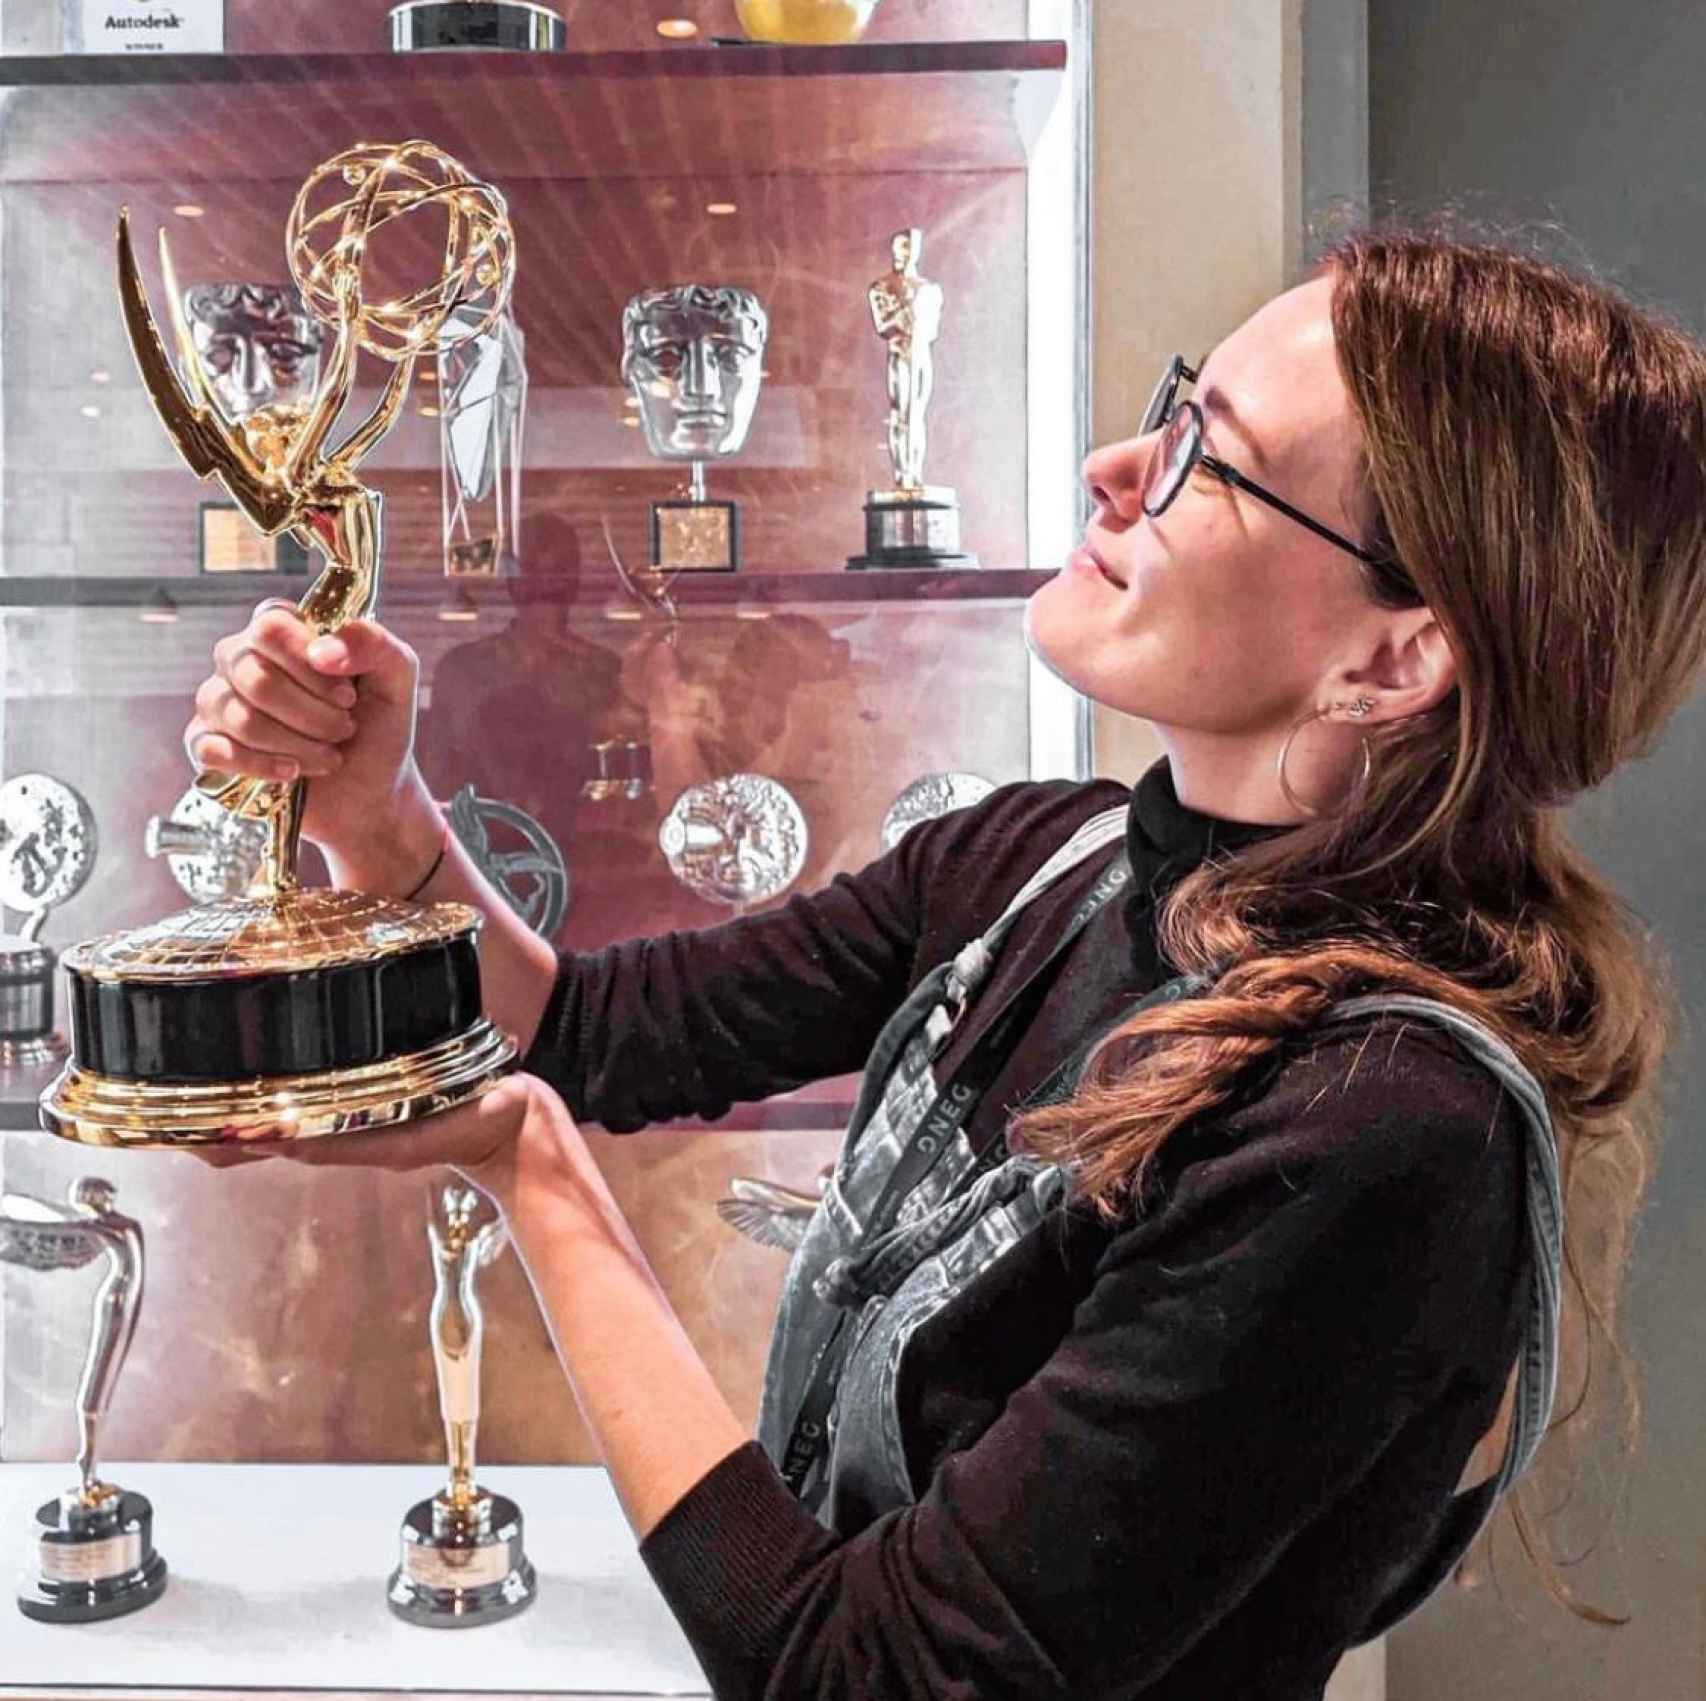 Alba, levantando el Emmy que ganó junto al equipo de diseño de la serie 'Chernobyl'.